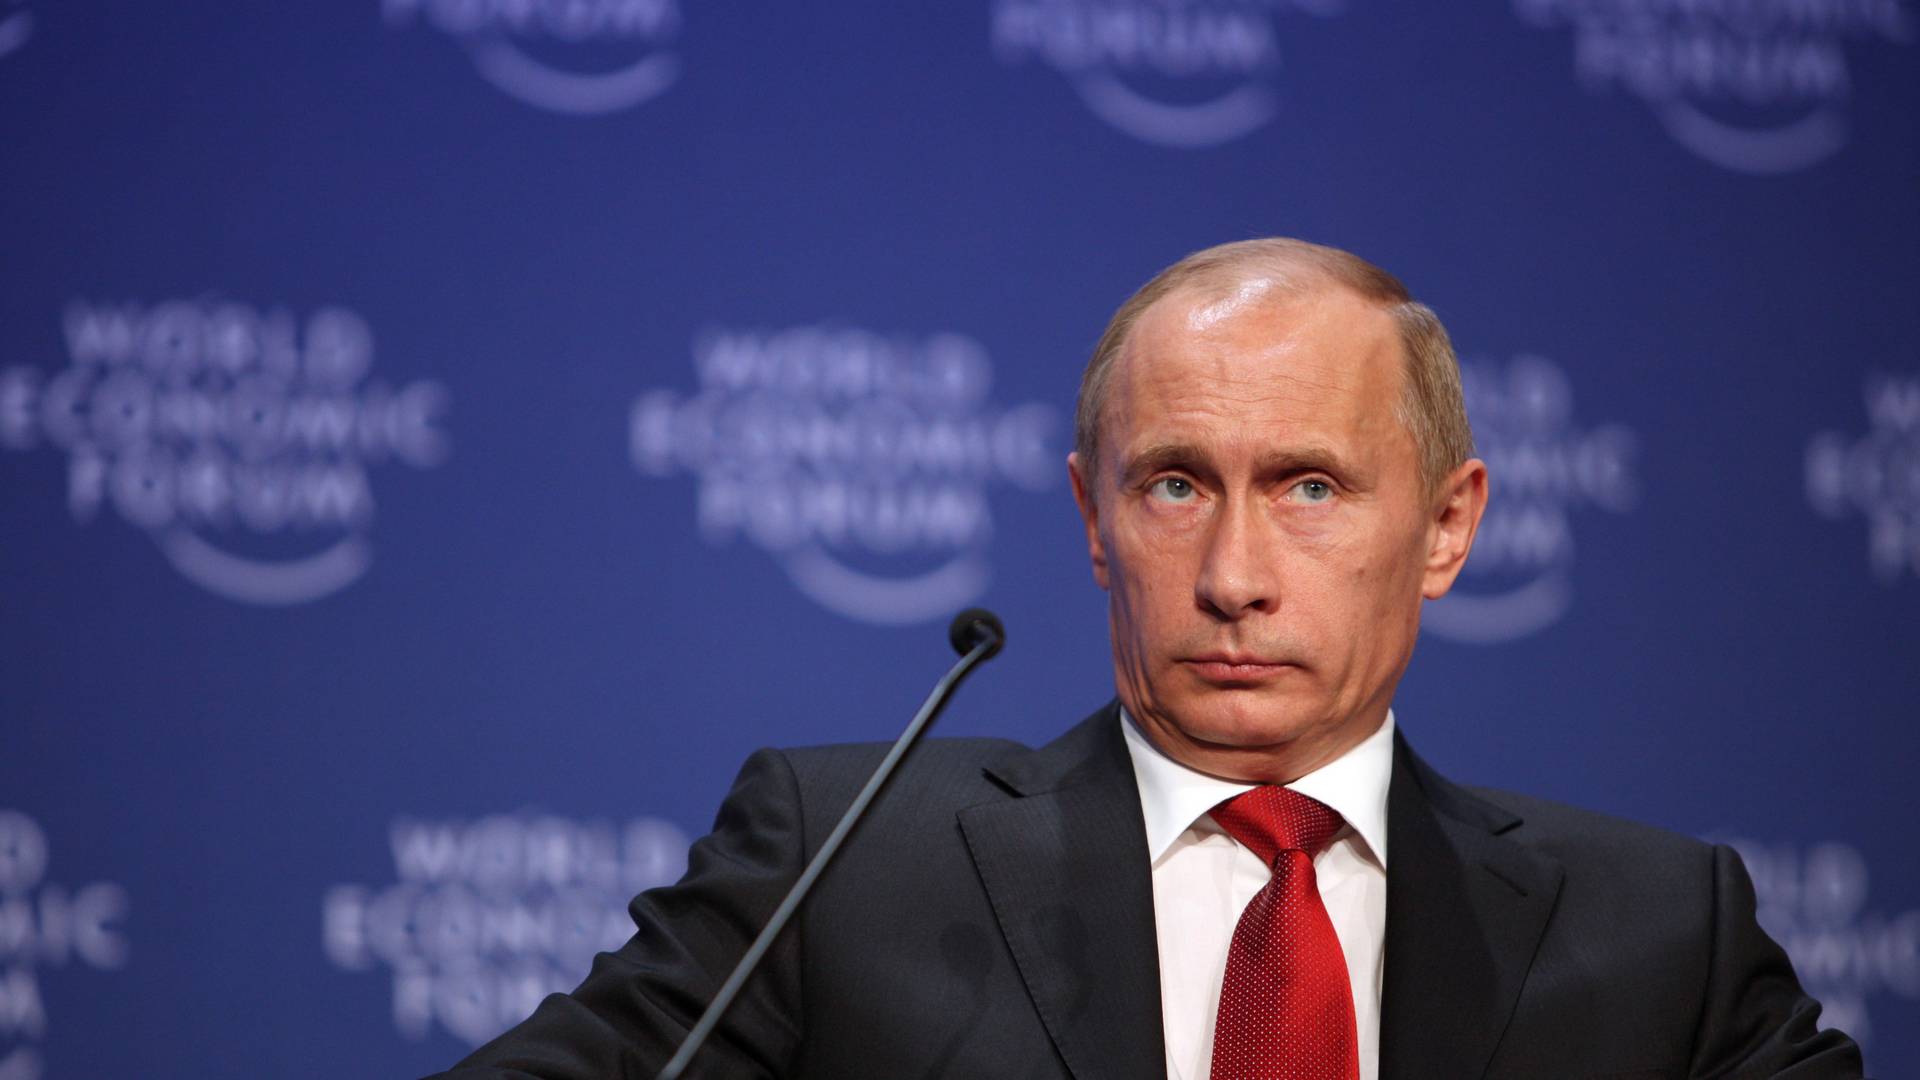 Władimir Putin bierze się za rap. Obiecuje "przejąć kontrolę" nad sceną hiphopową w Rosji